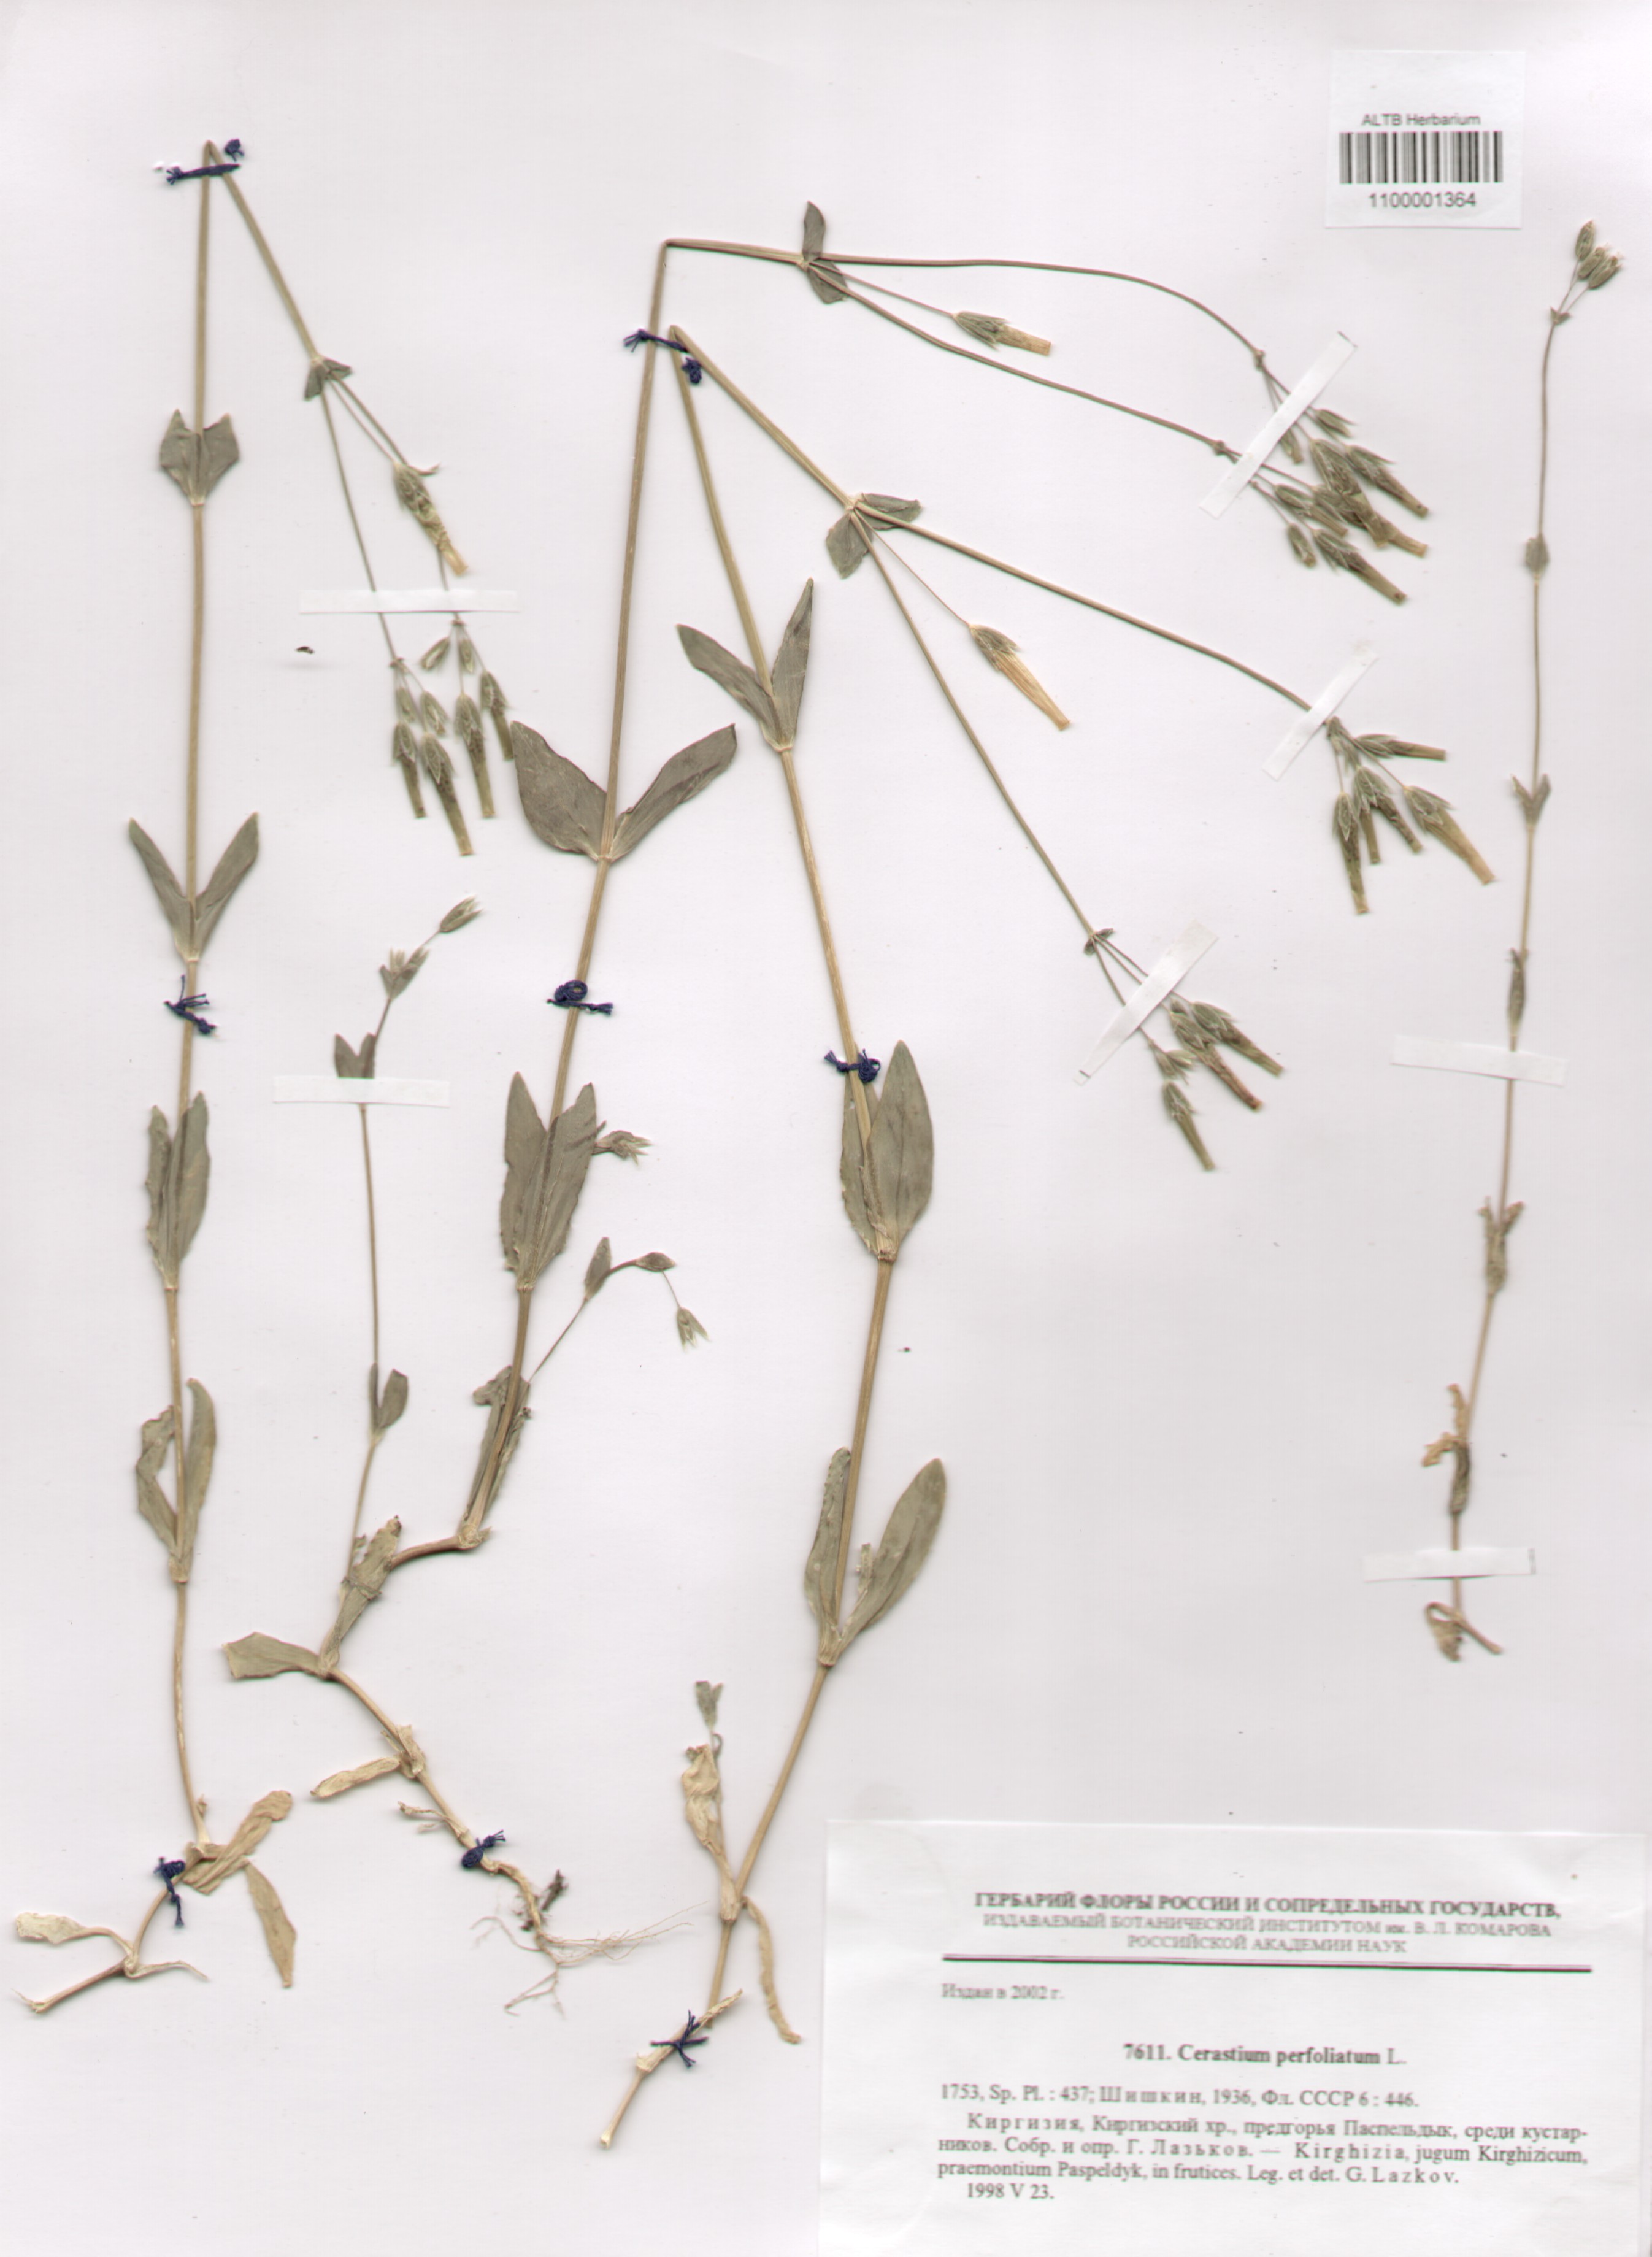 Caryophyllaceae,Cerastium perfoliatum L.